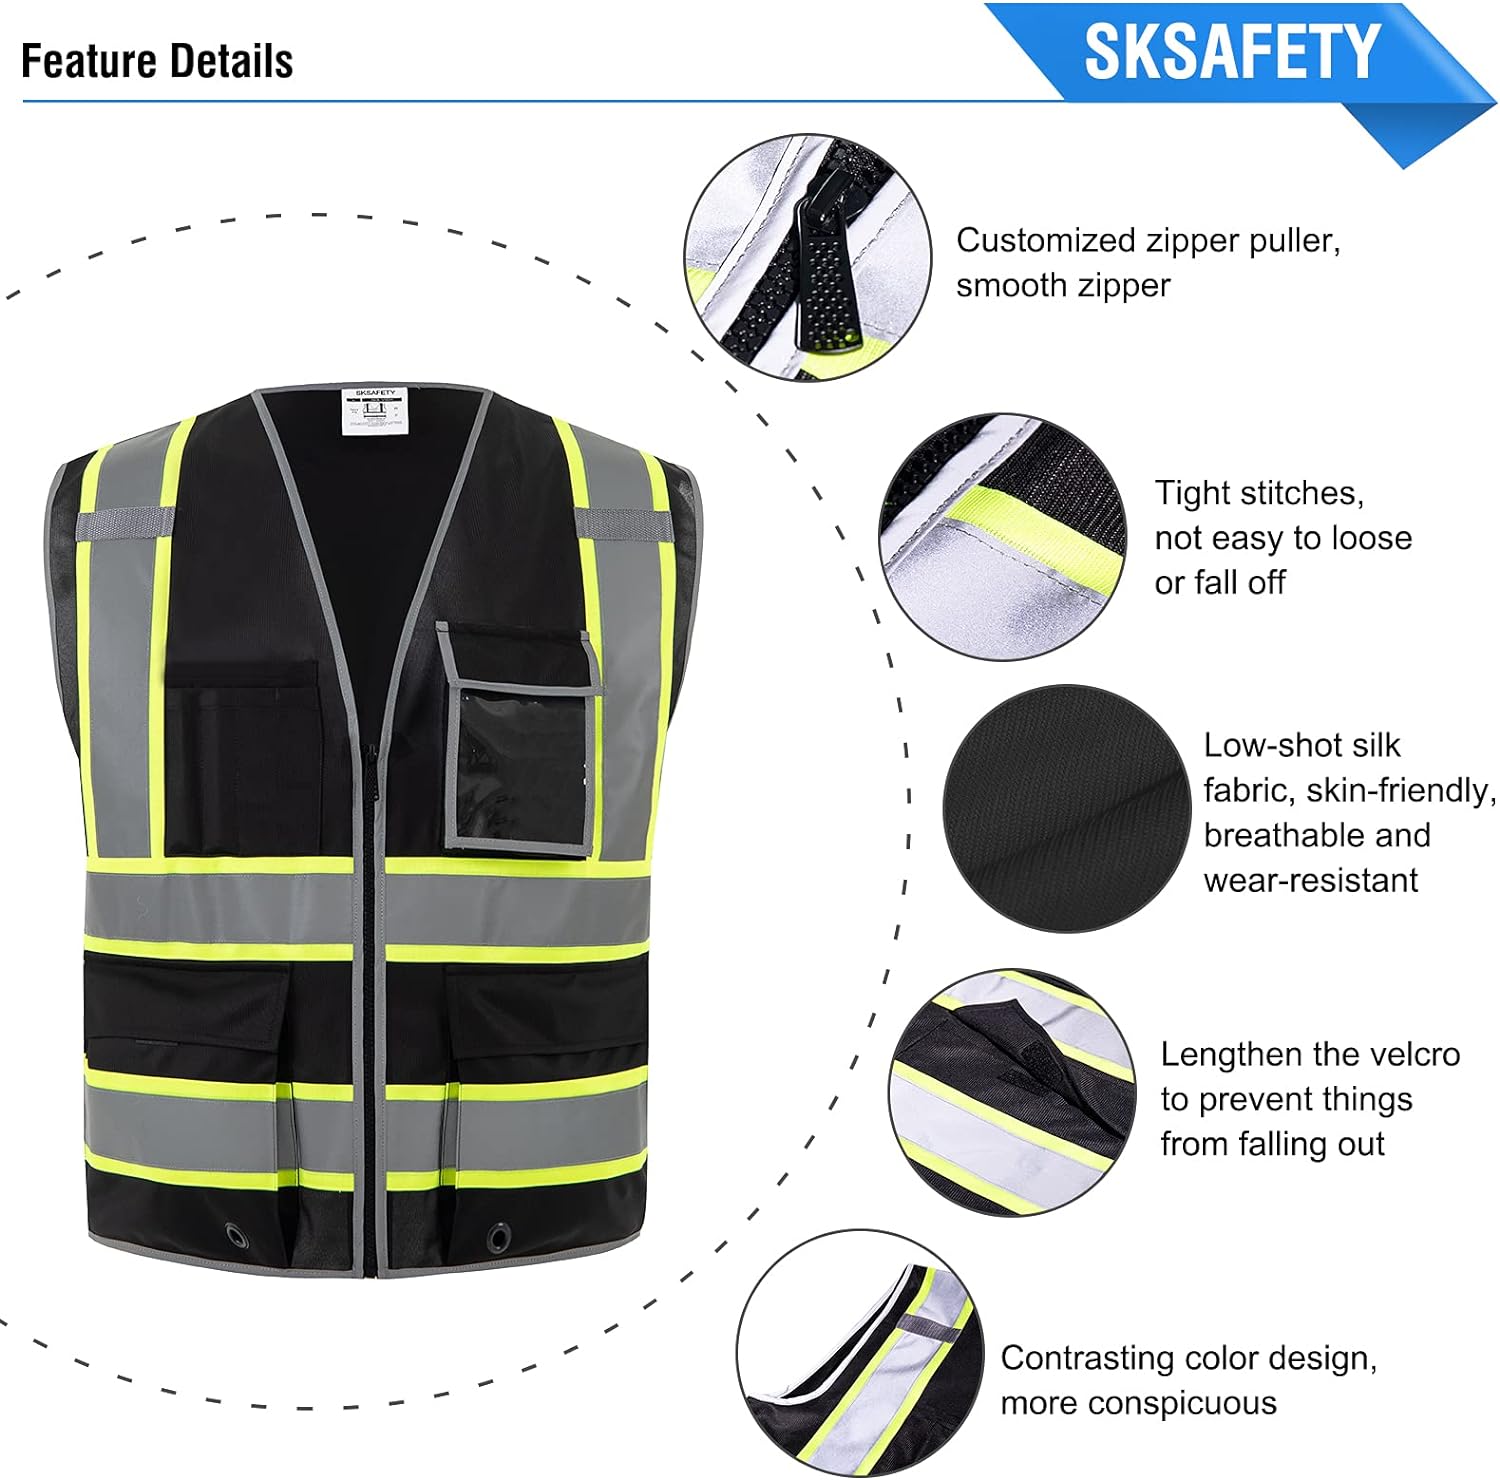 SKSAFETY Safety Vest for Men with 10 Pockets, High Visibility Reflective Vest, Work Vest for Men, Construction Vest, Security Vest, Blac